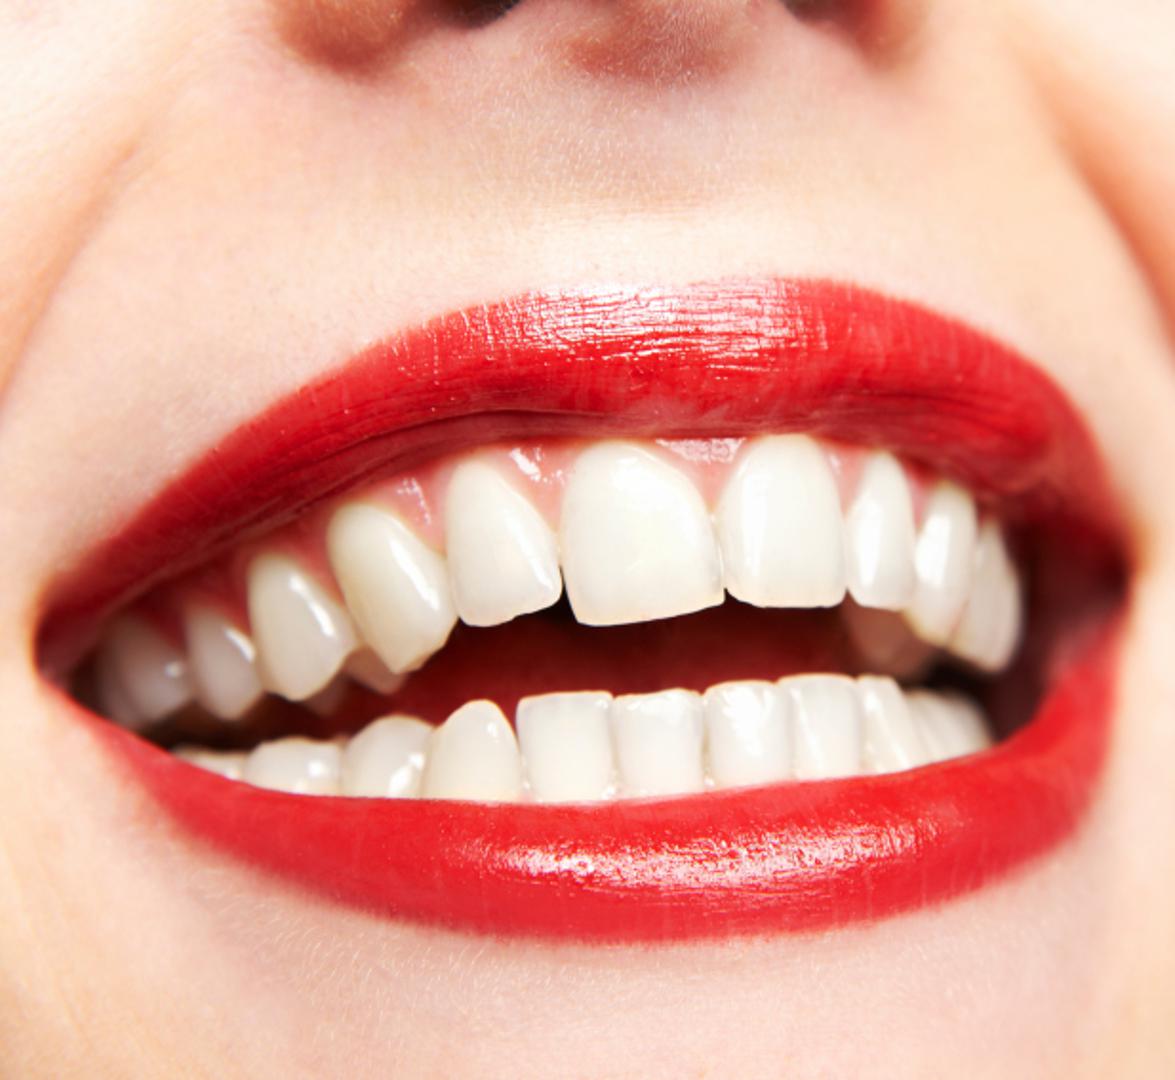 Zubi su ono što će većina ljudi prvo primjetiti na vama. Upravo stoga sve češće mnogi teže "holivudskim osmijesima" jer žuti, prljavi zubi mogu itekako narušiti cijeli dojam.